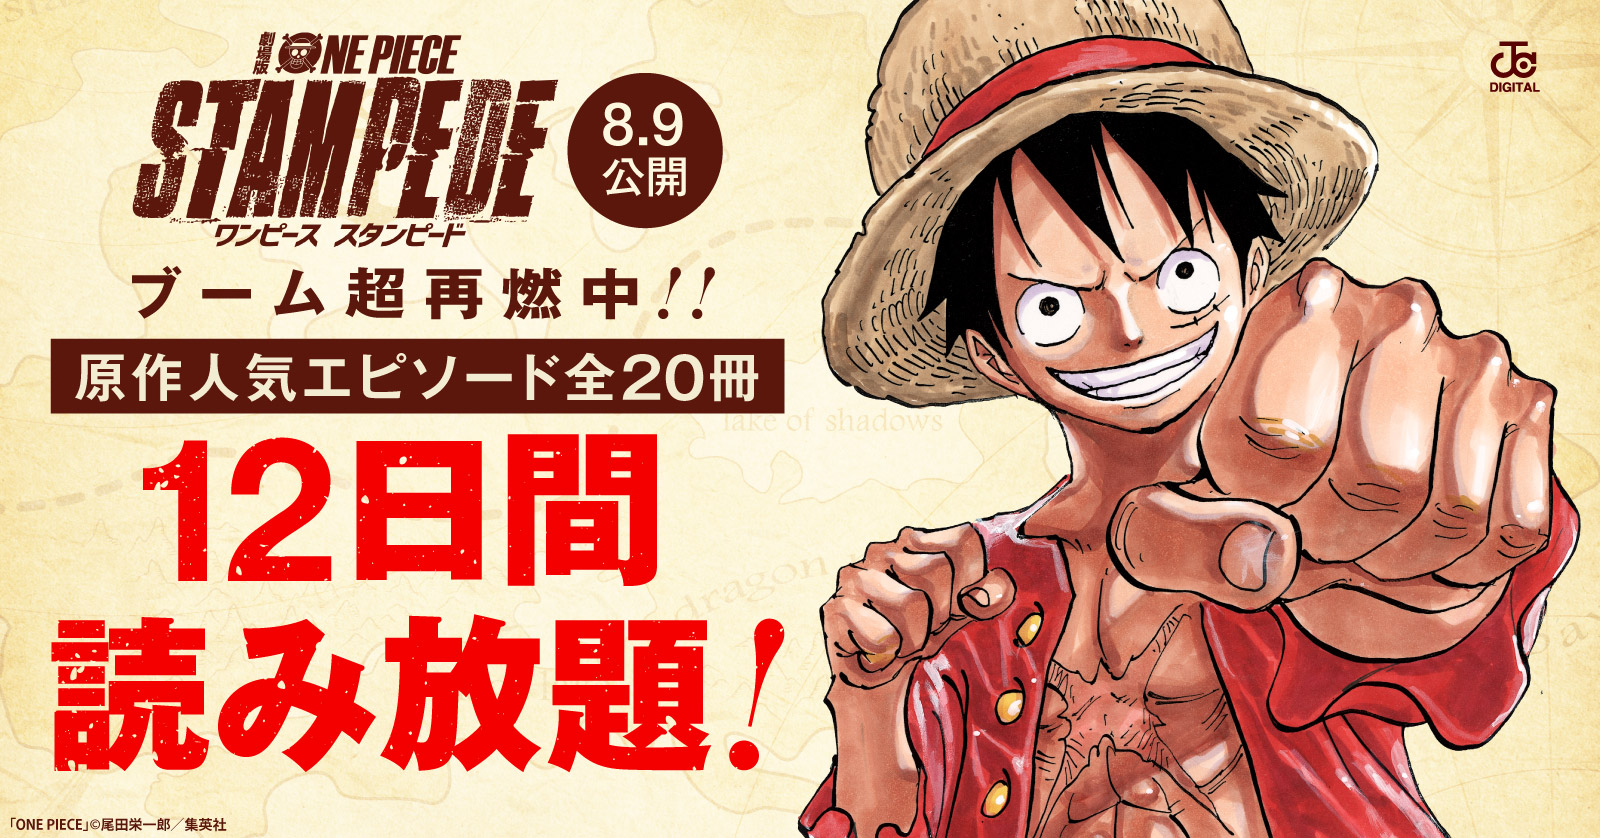 One Piece 一部無料読み放題 アニメ周年 劇場版公開記念 株式会社toricoのプレスリリース